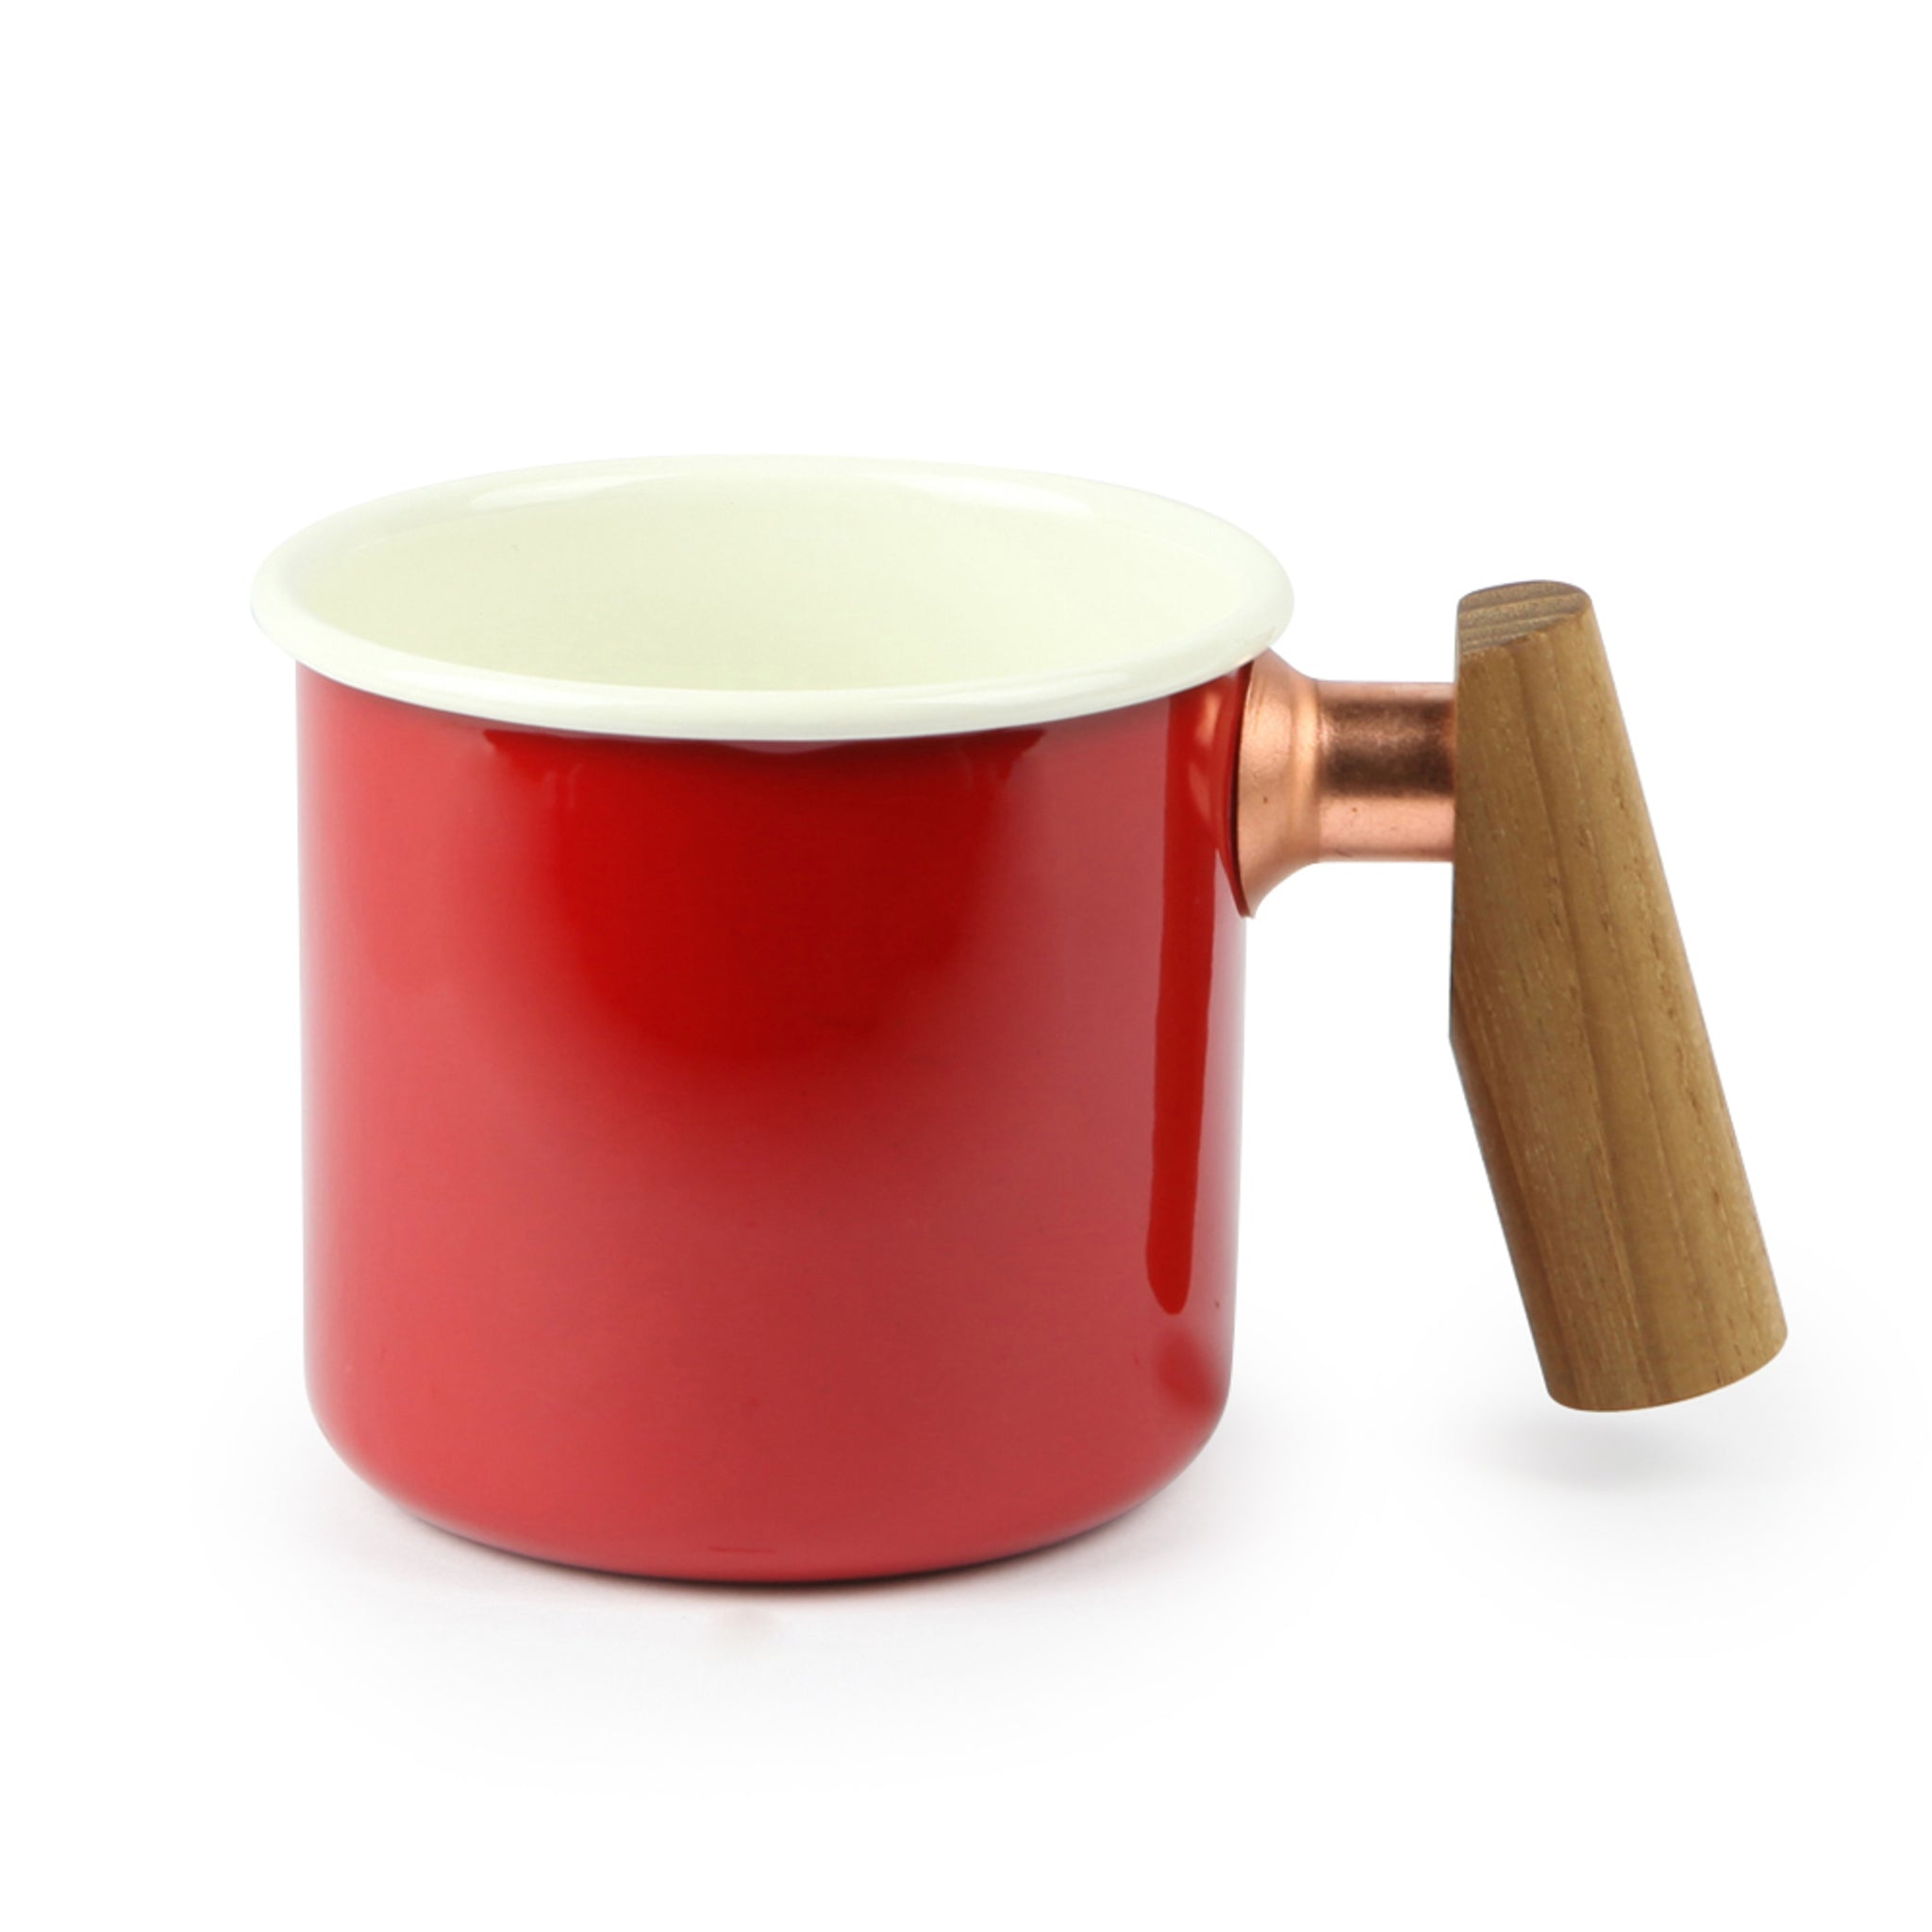 Truvii 木柄琺瑯杯 咖啡杯 品茗茶杯 400ml TENM2